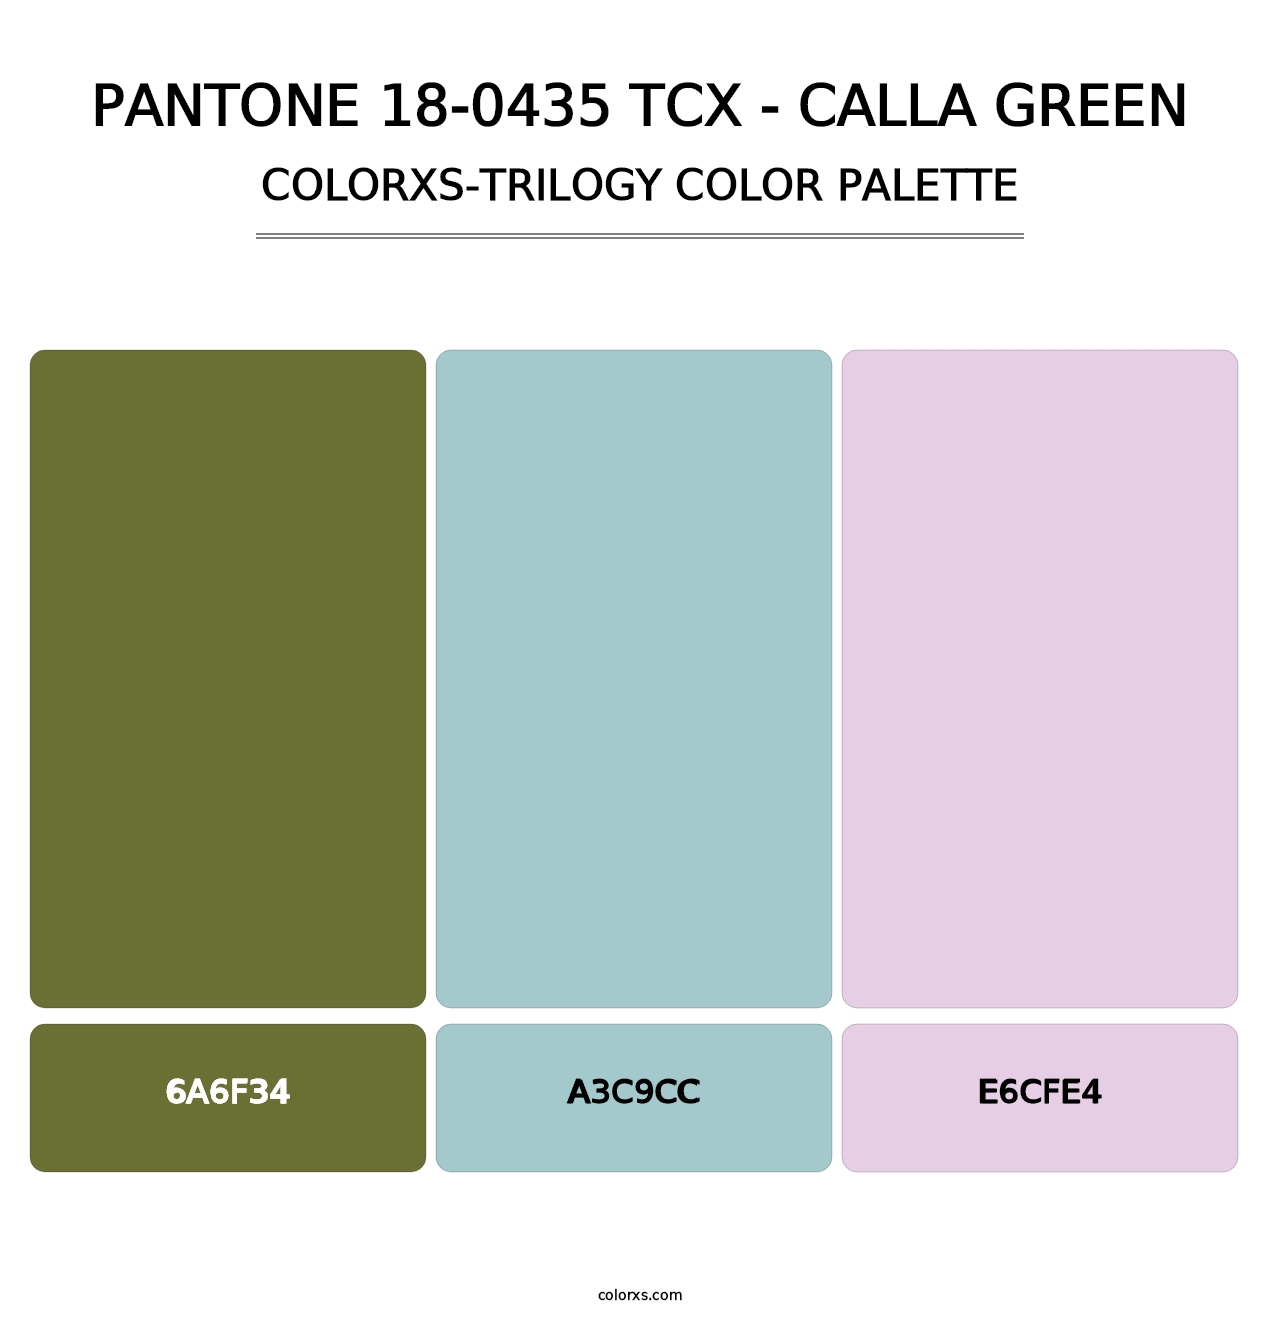 PANTONE 18-0435 TCX - Calla Green - Colorxs Trilogy Palette